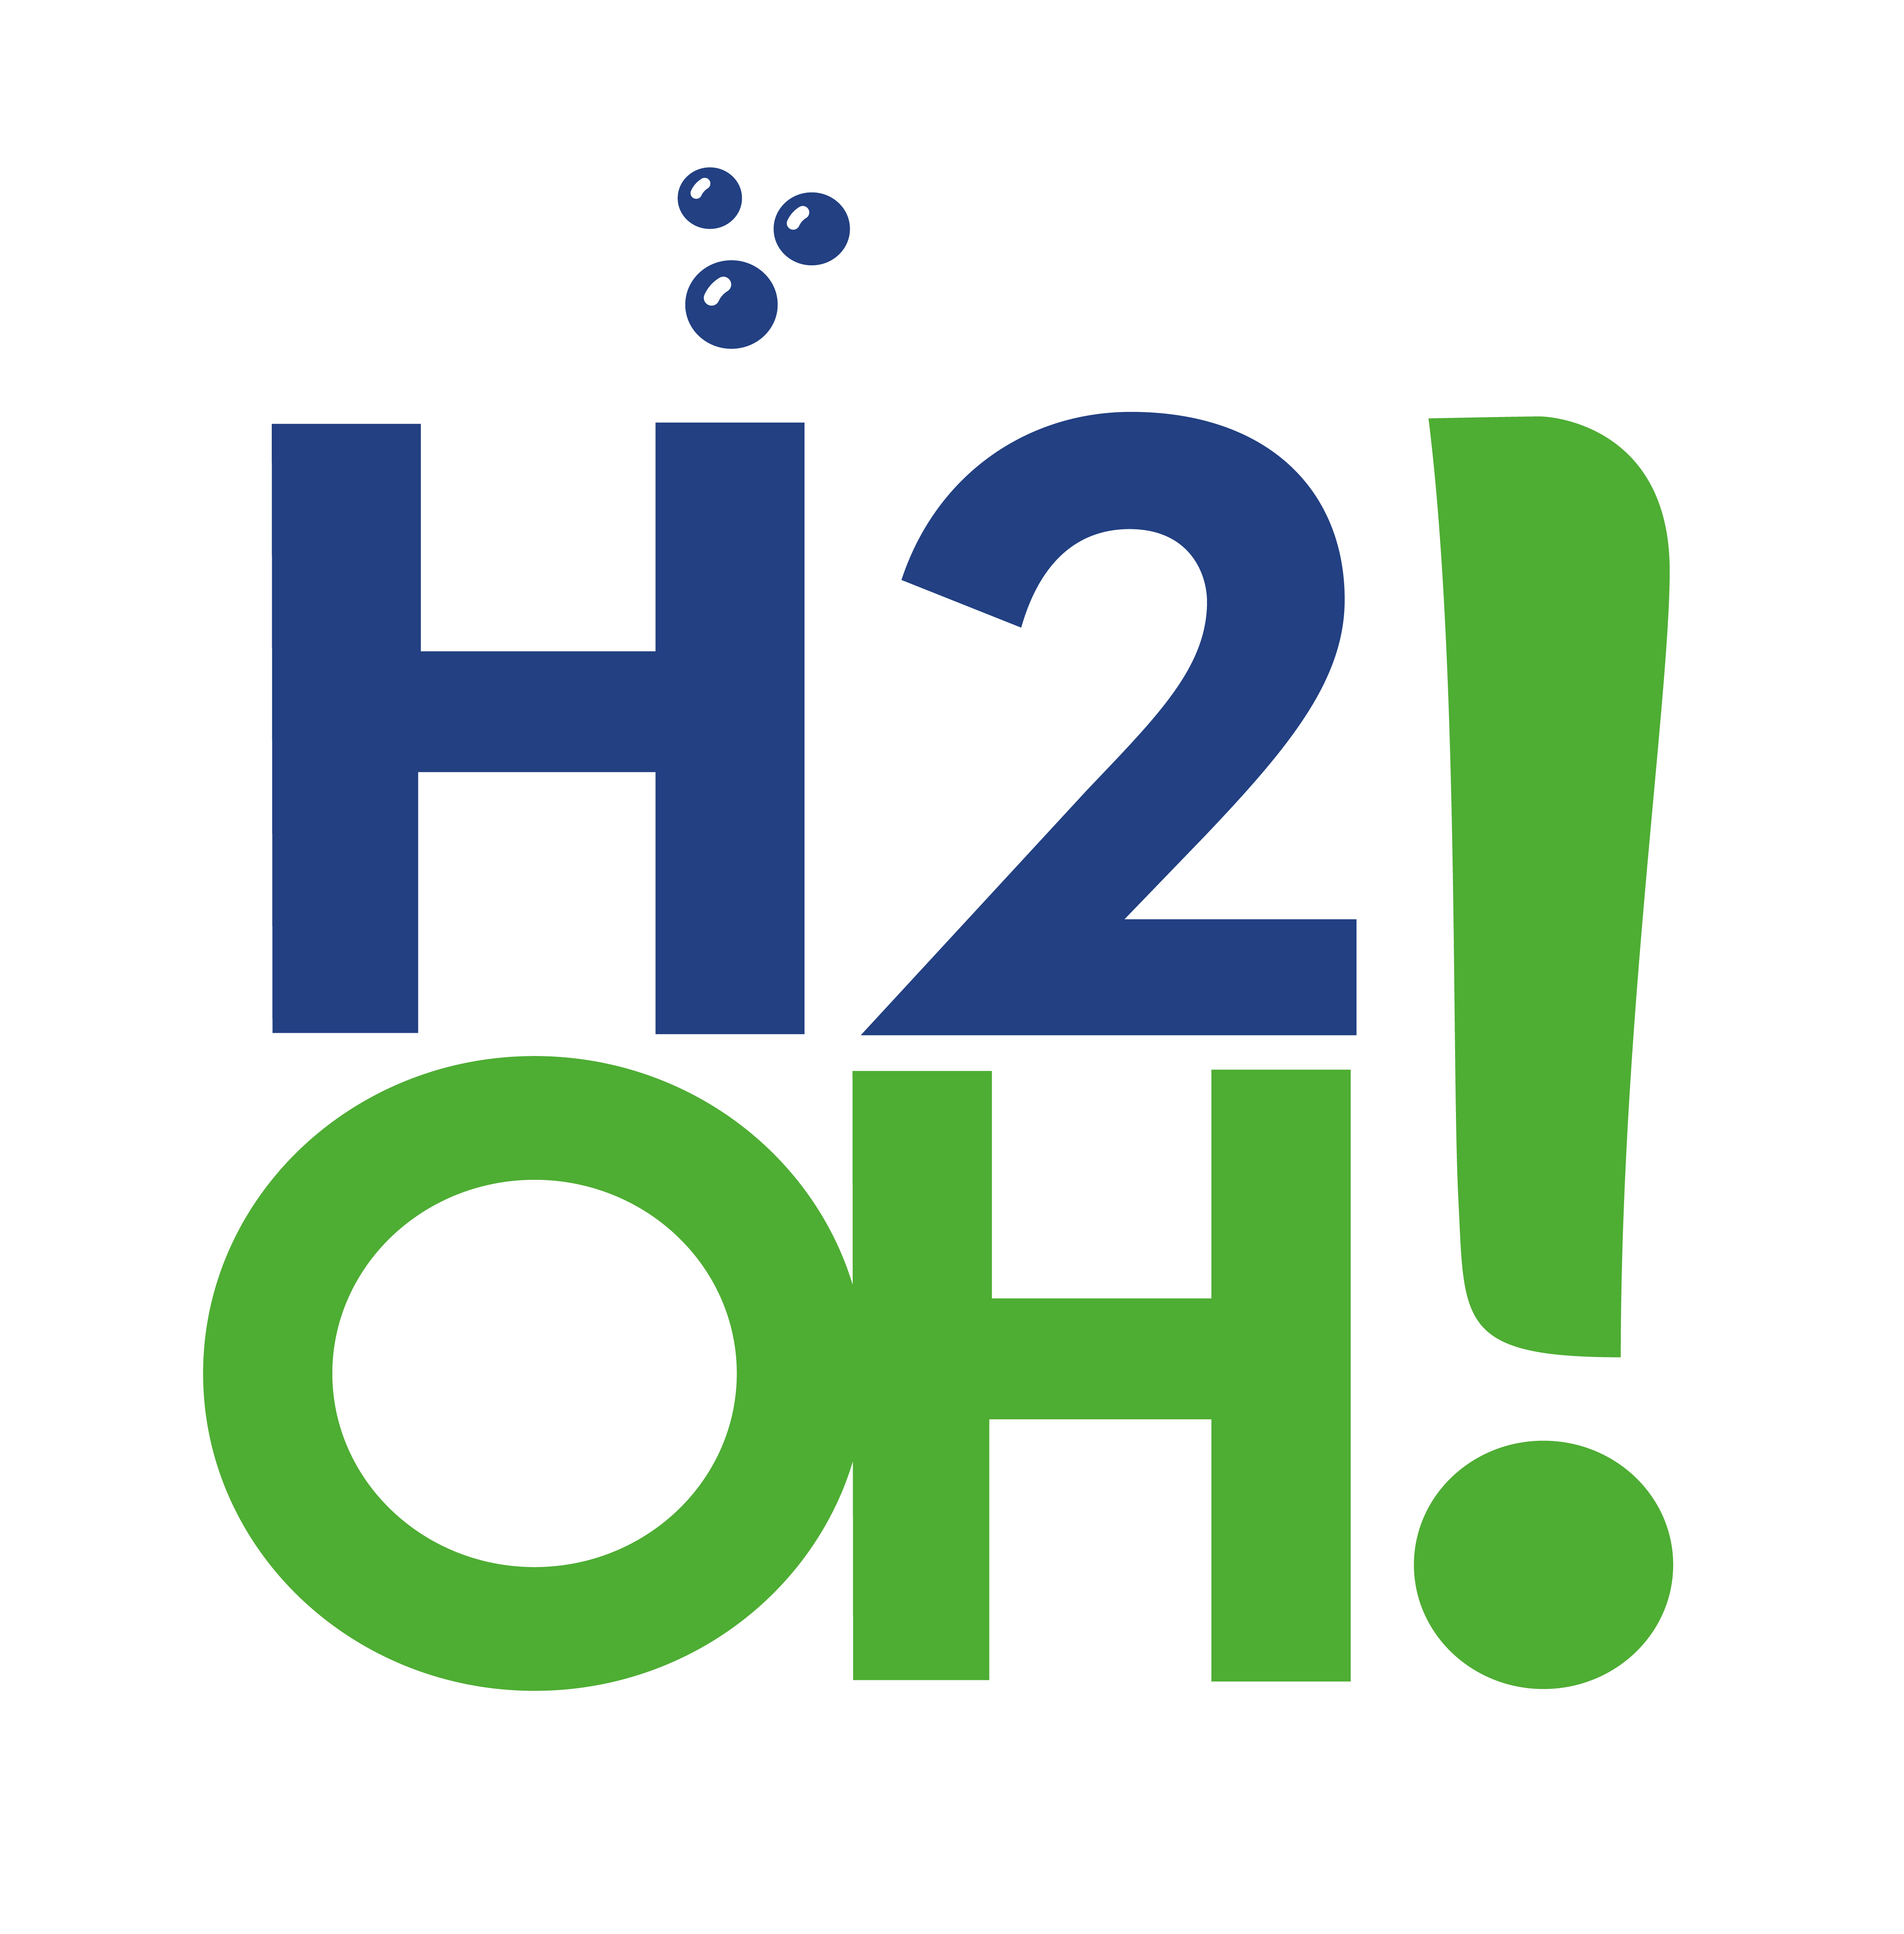 logo h20